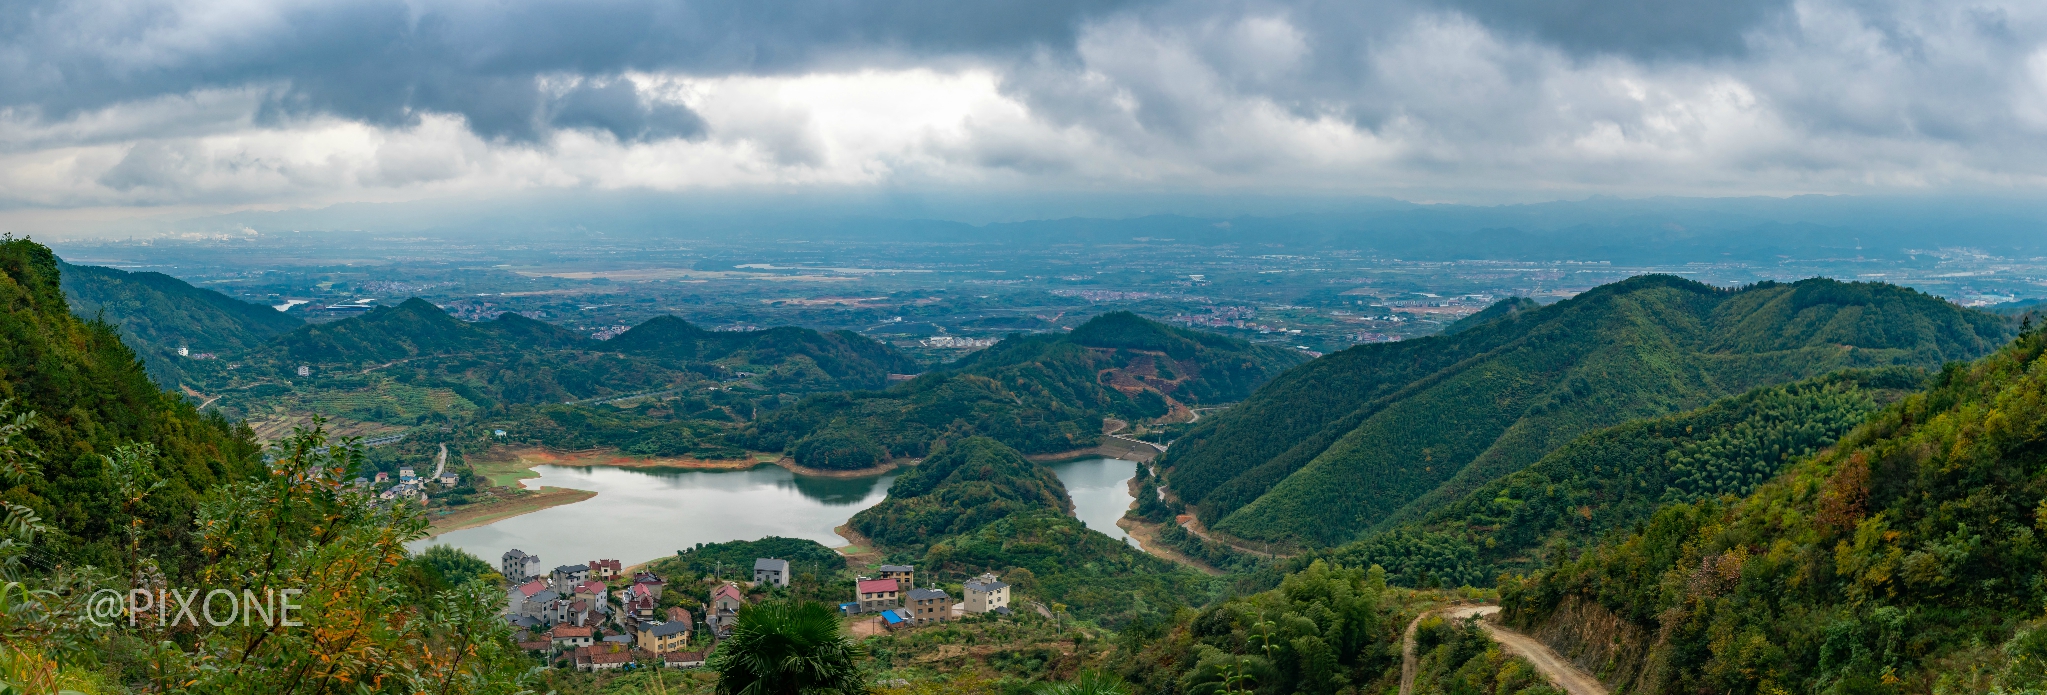 衢州乌石山风景区图片